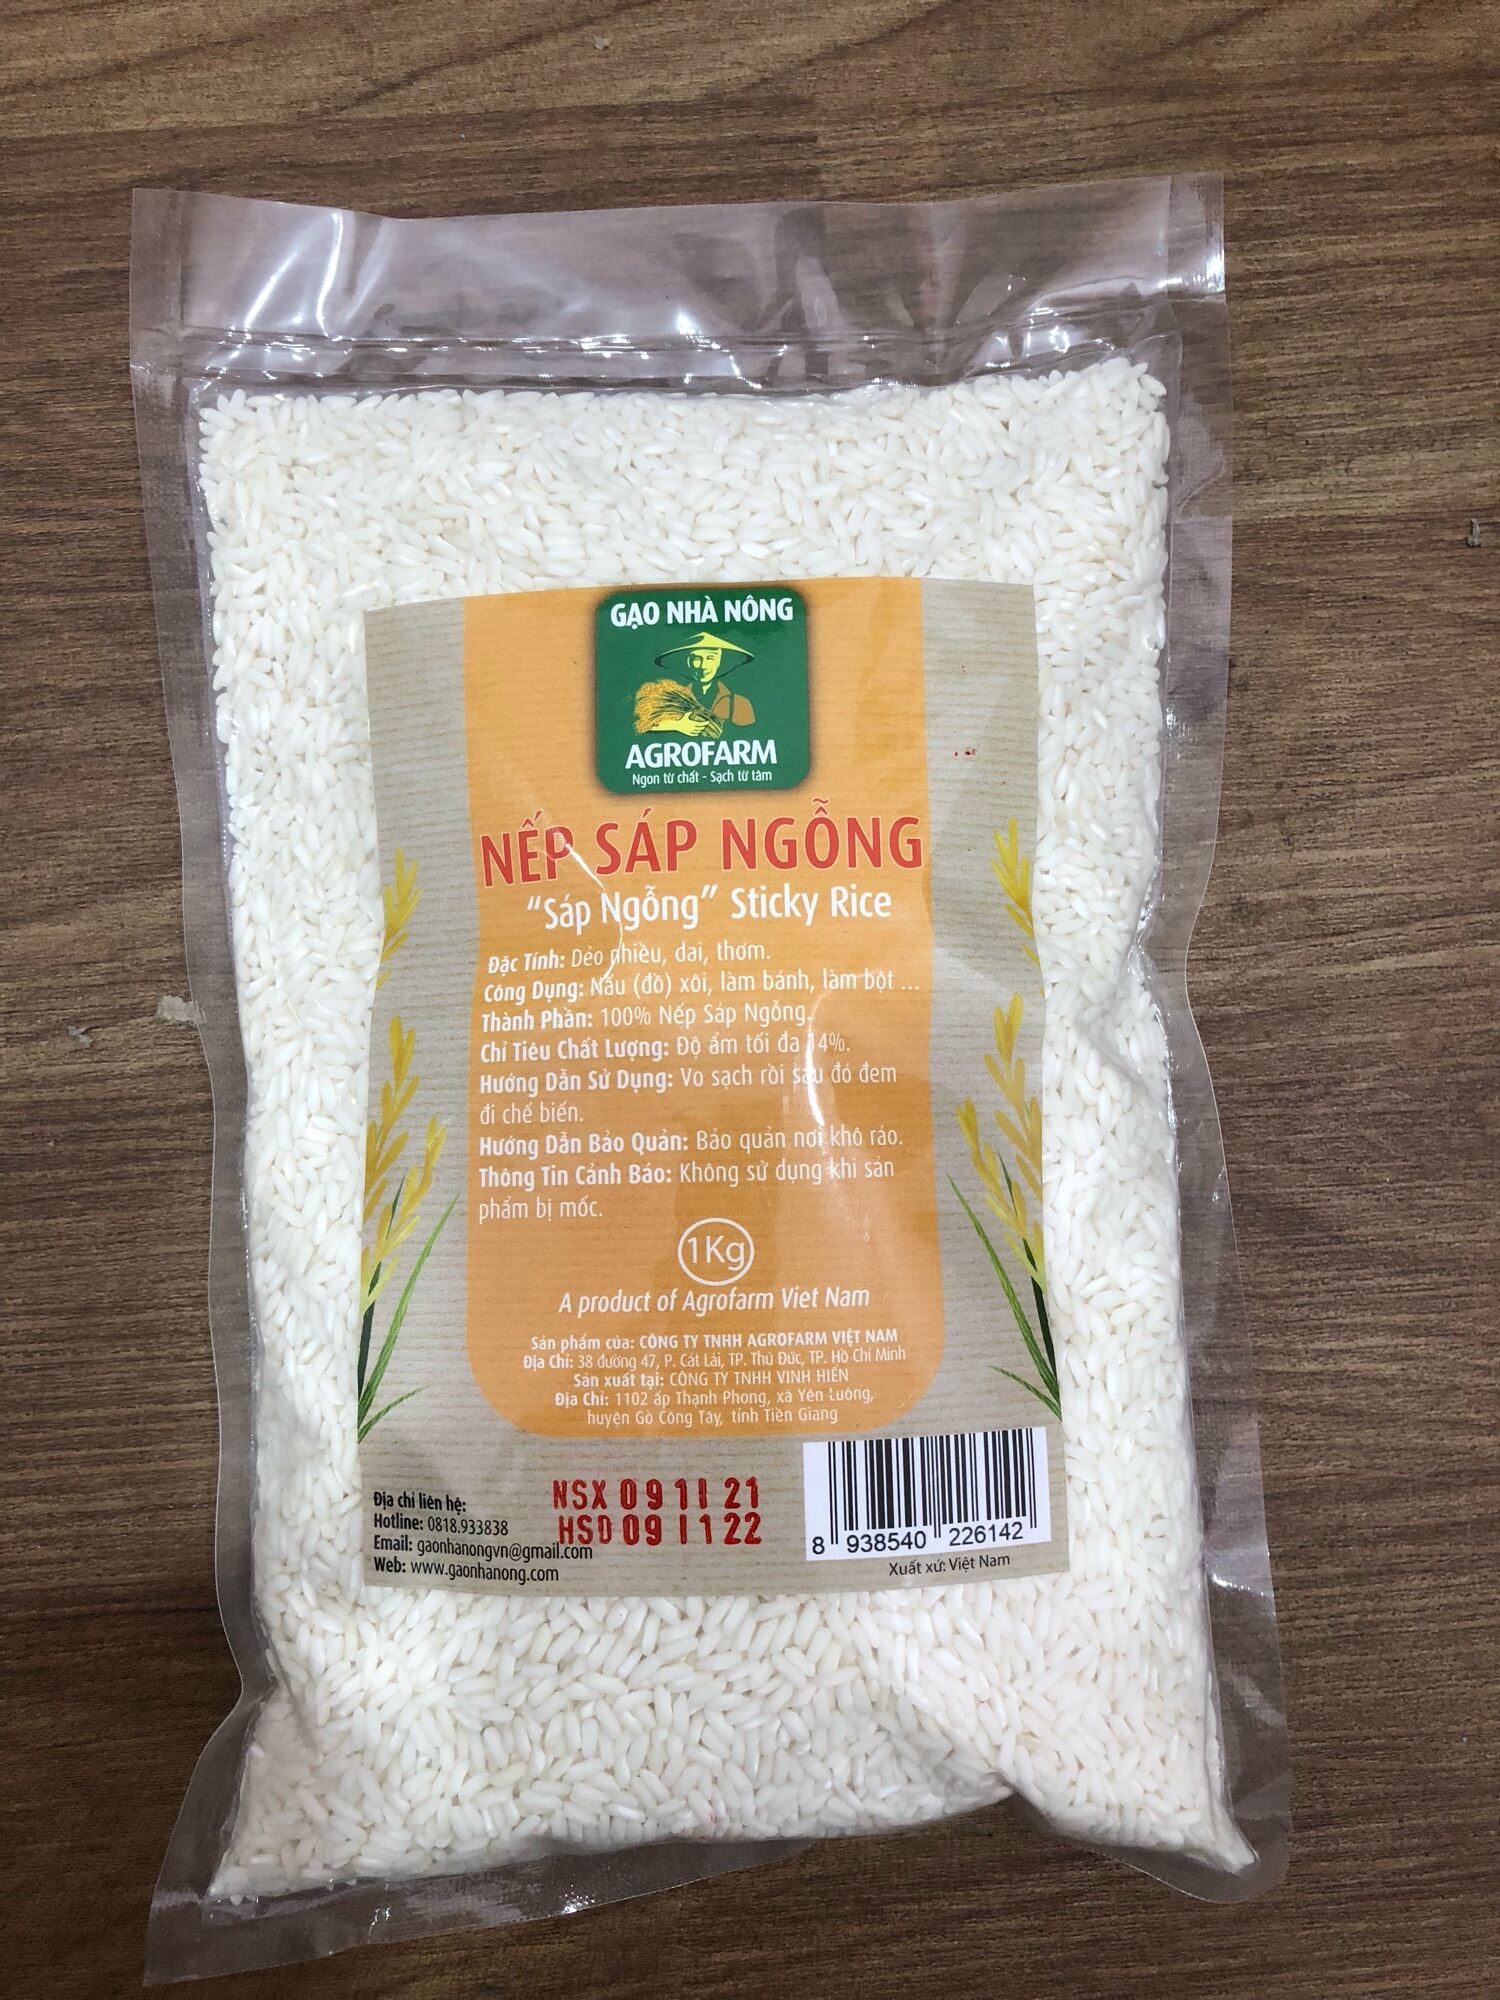 Gạo nếp sáp ngỗng Agrofarm túi 1kg